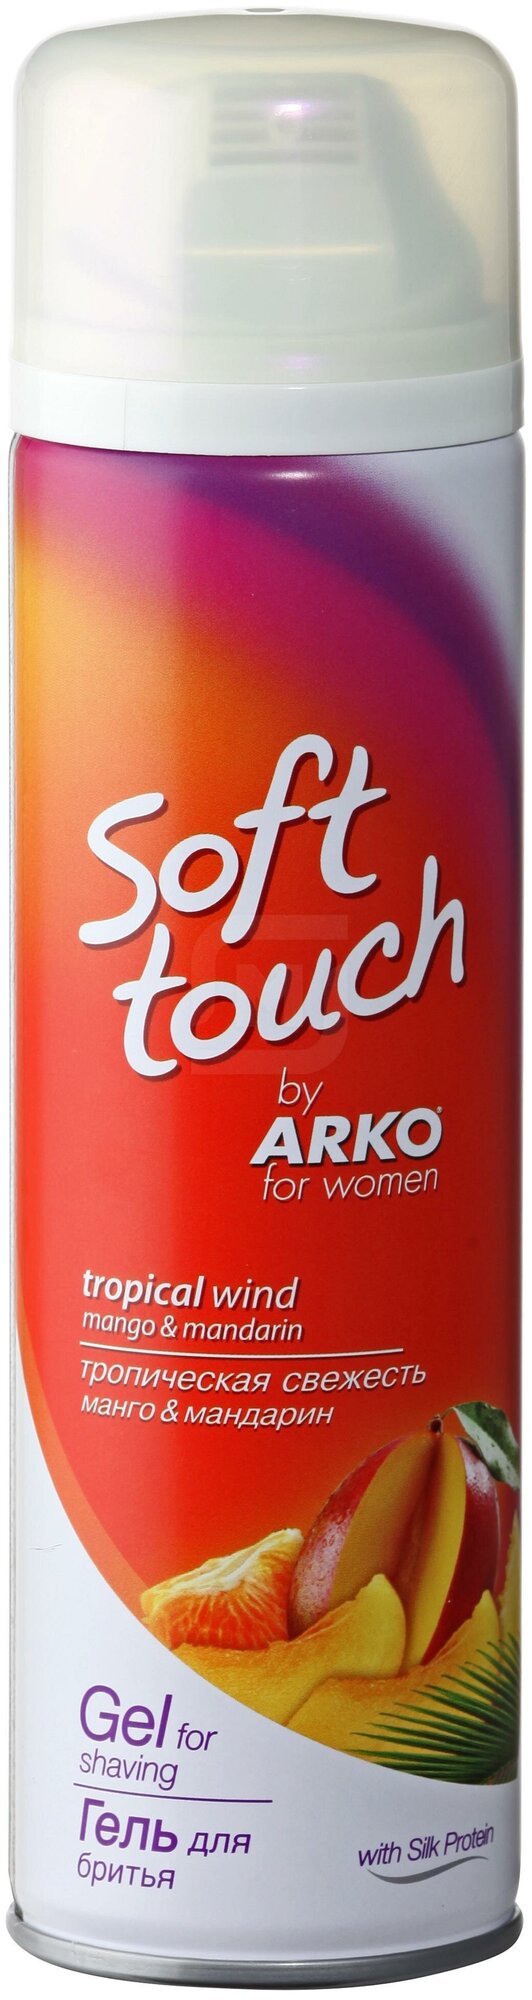 Гель для бритья ARKO Soft Touch Тропическая свежесть, для женщин, 200мл - фото №7